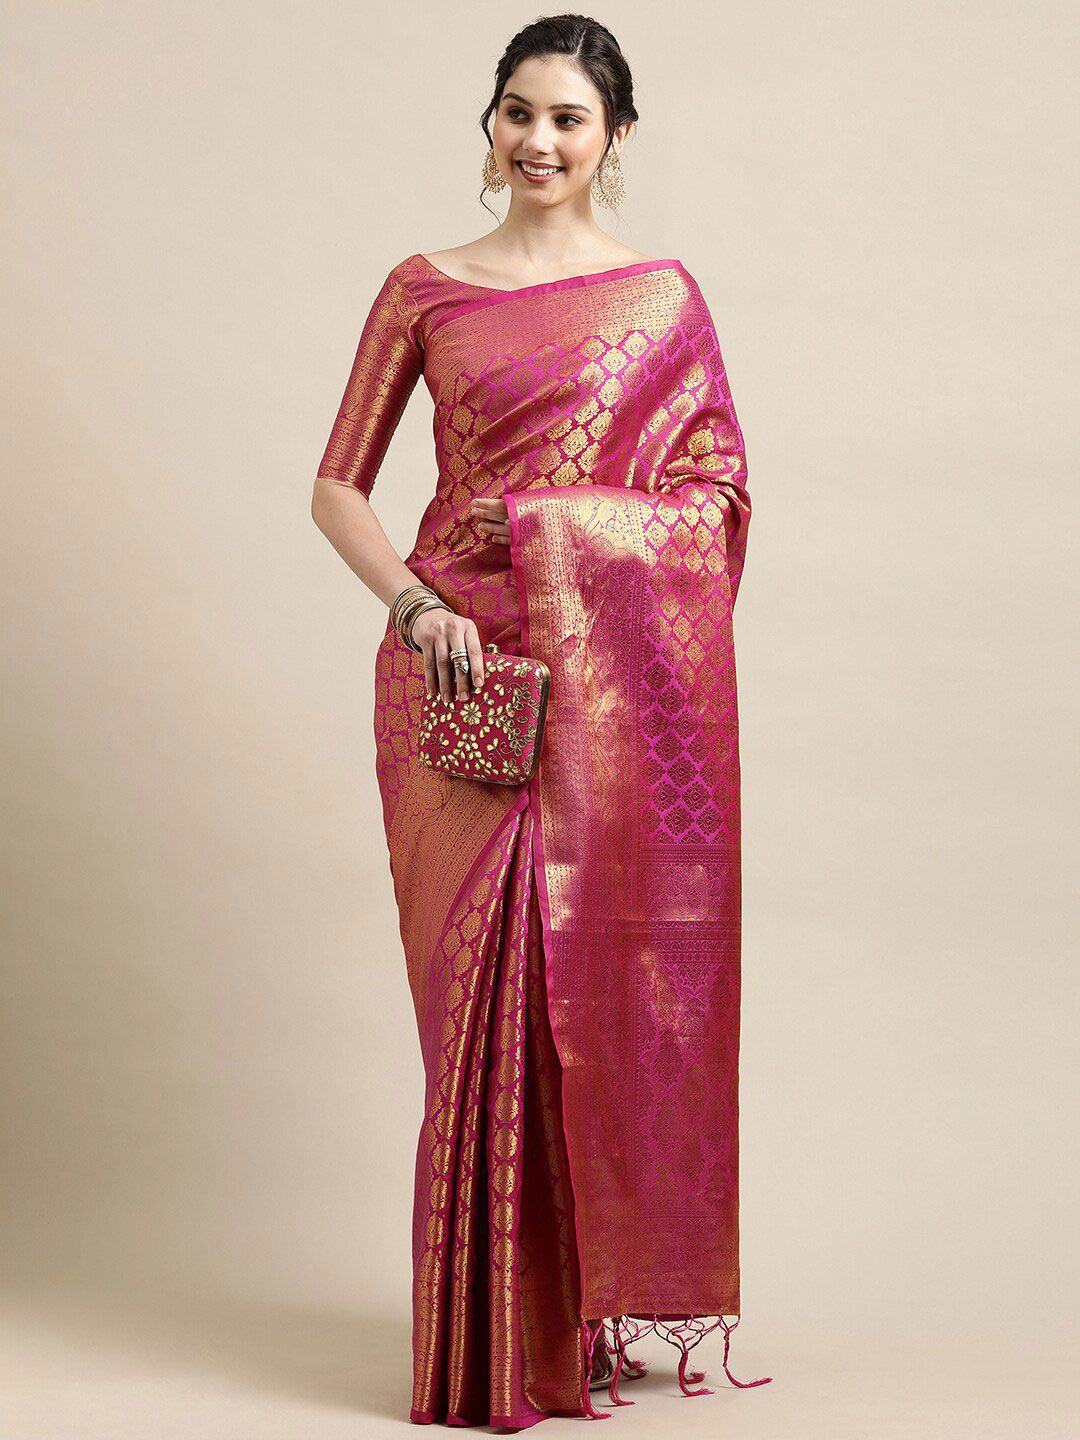 Saree mall Pink & Gold-Toned Woven Design Zari Silk Blend Banarasi Sarees Price in India